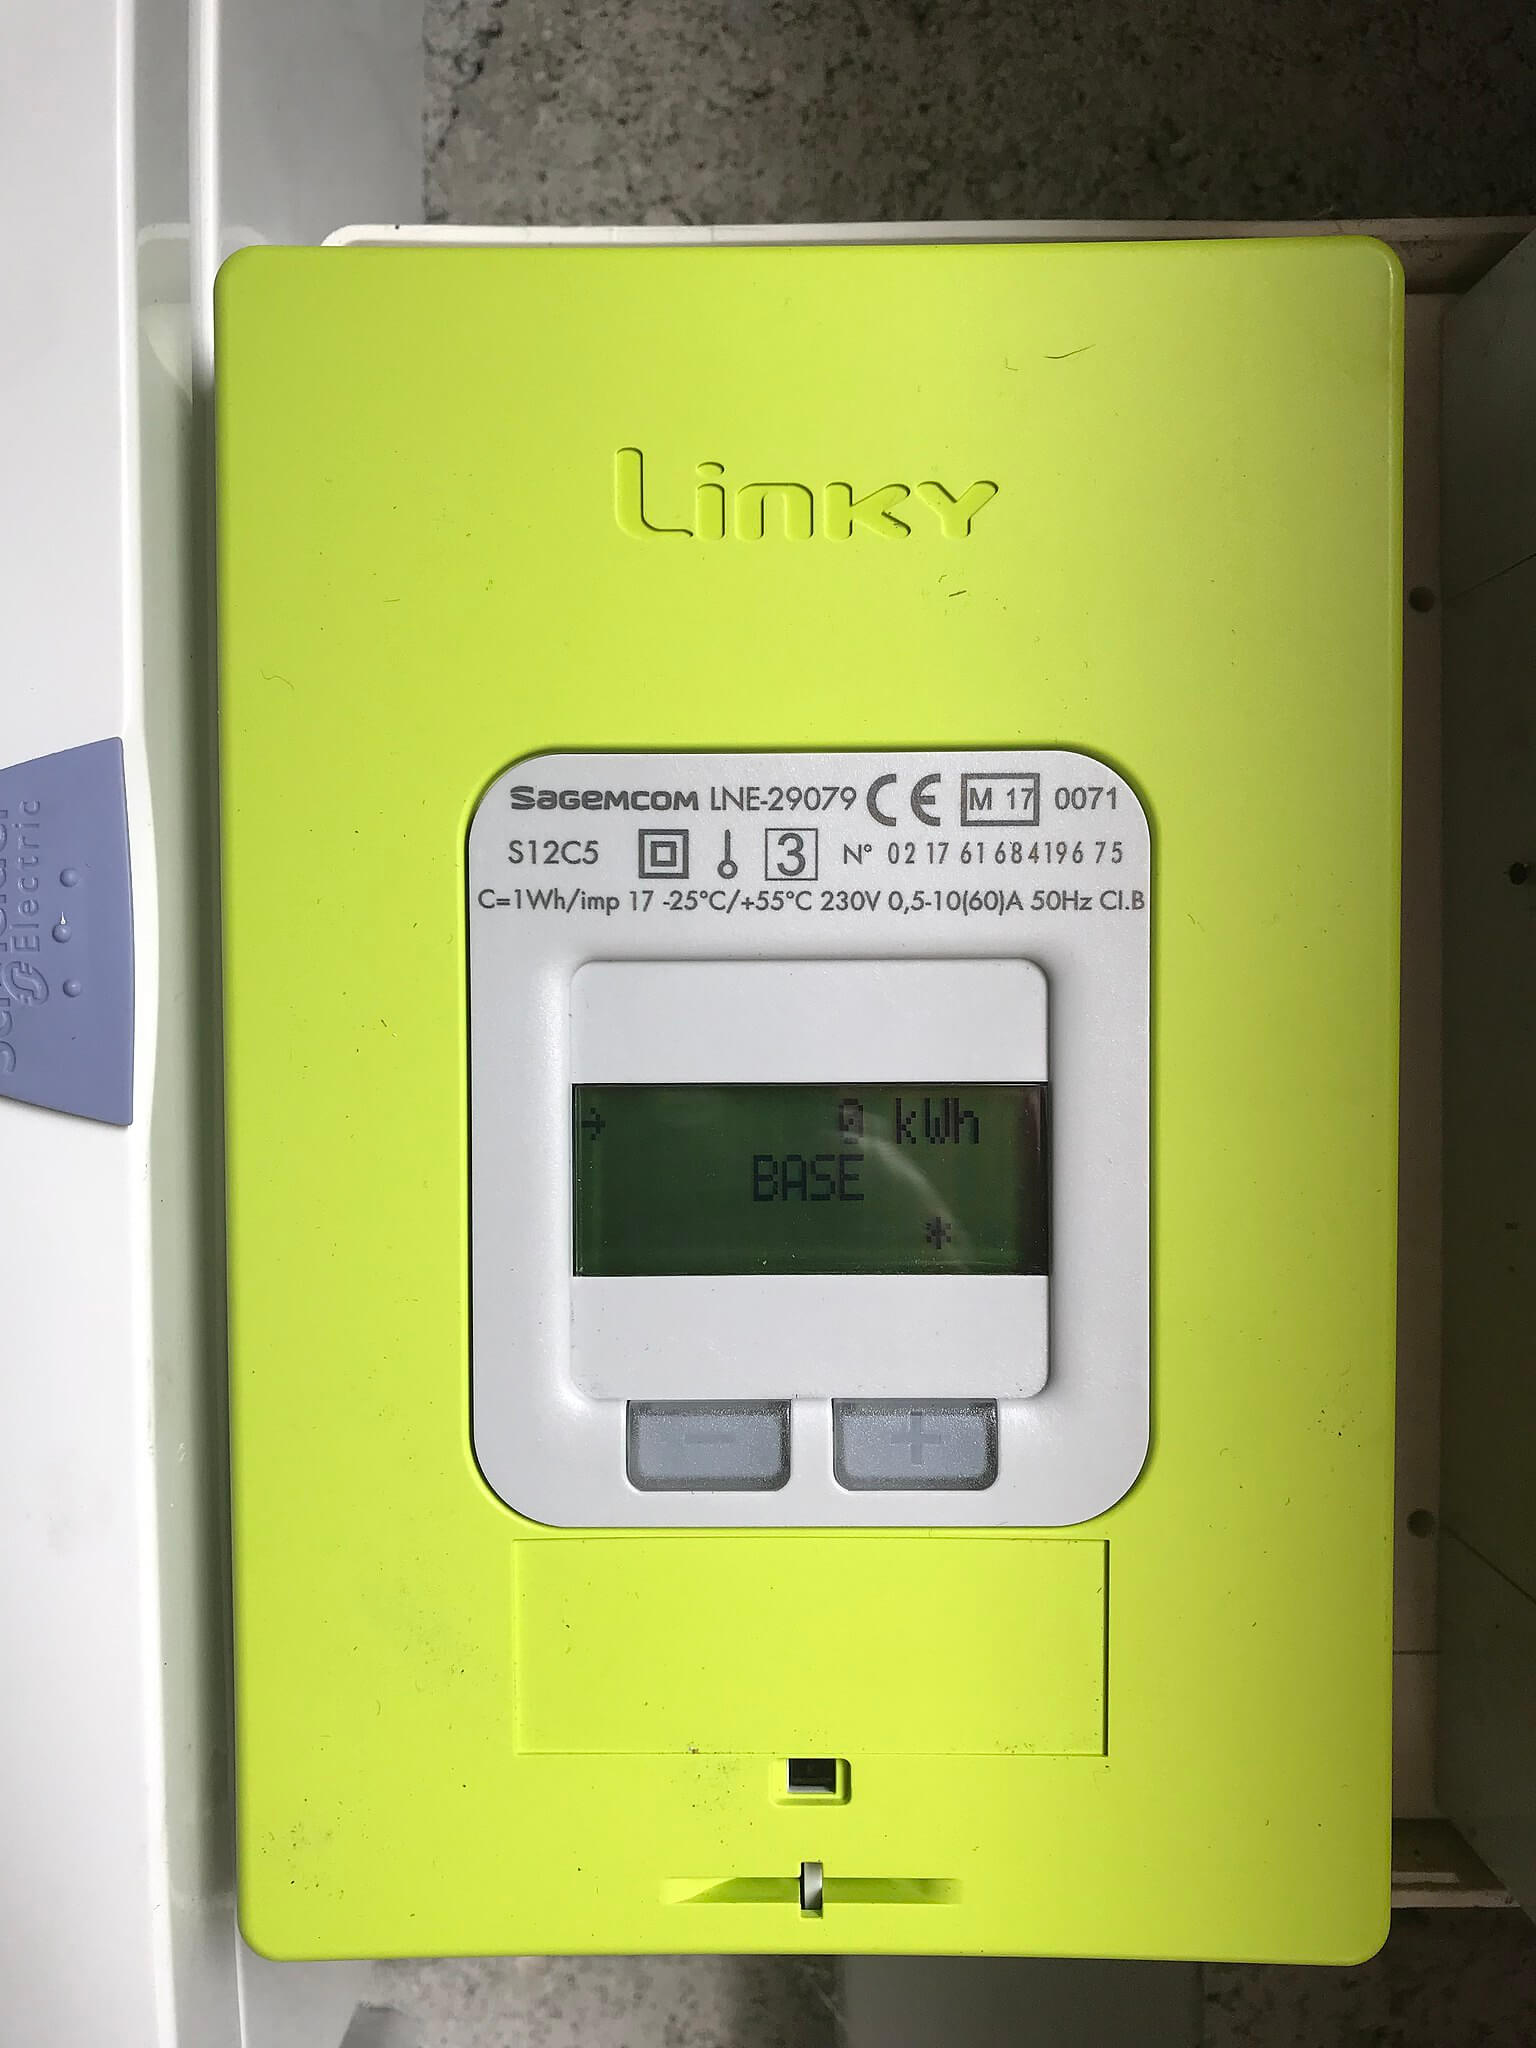 200 000 foyers équipés d'un compteur Linky sont concernés : leur consommation  électrique pourrait être limitée cet hiver 